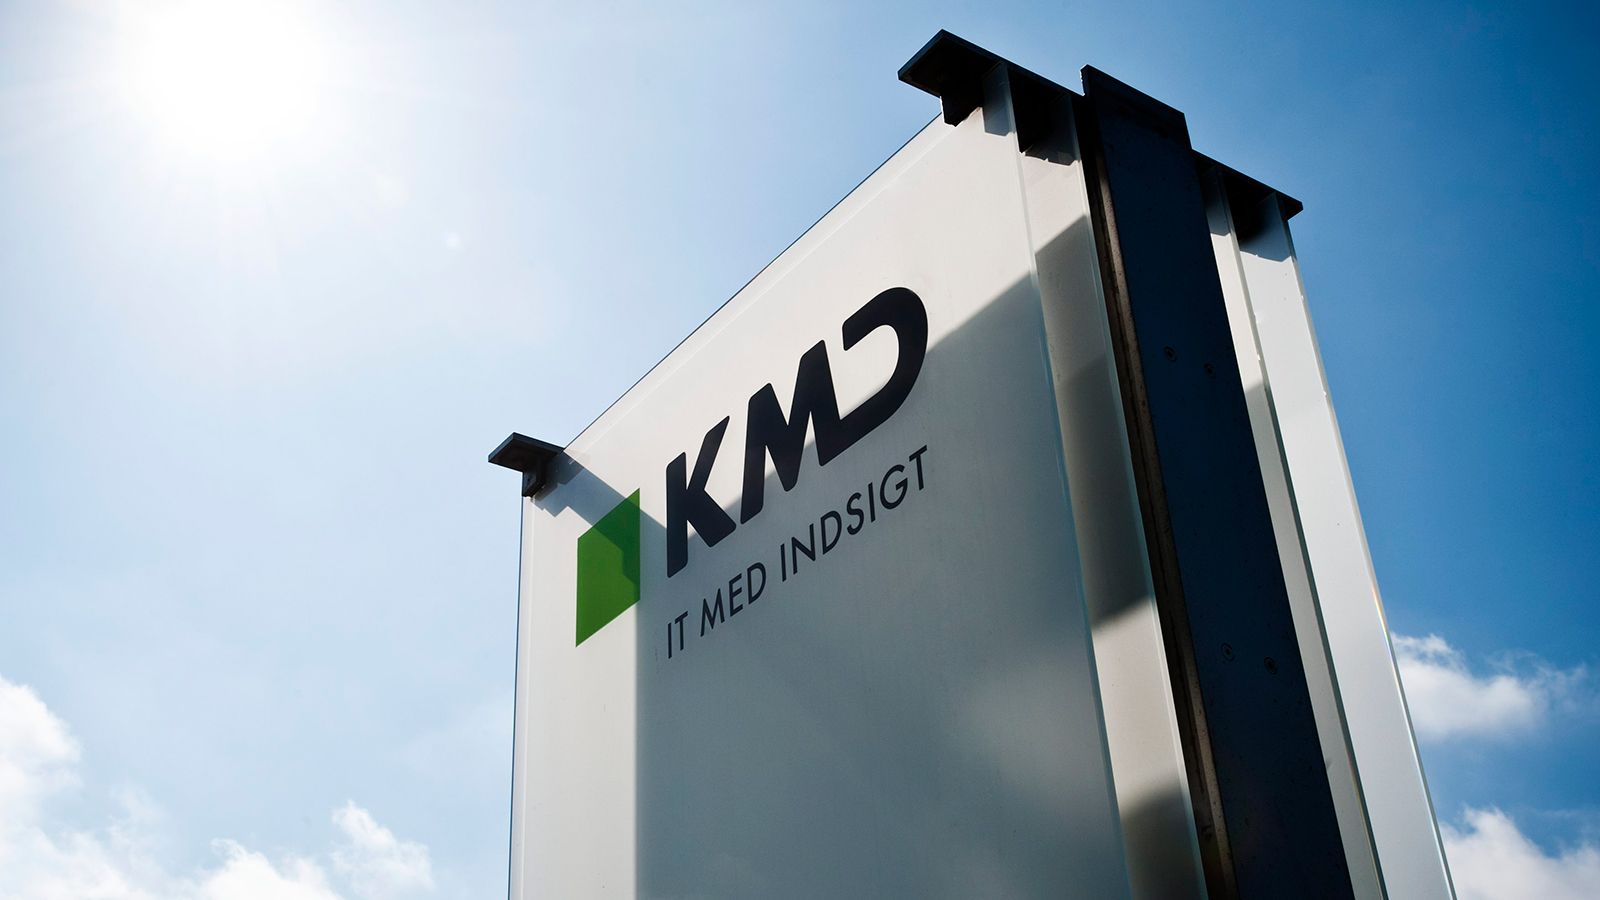 KMD's hovedsæde i Ballerup